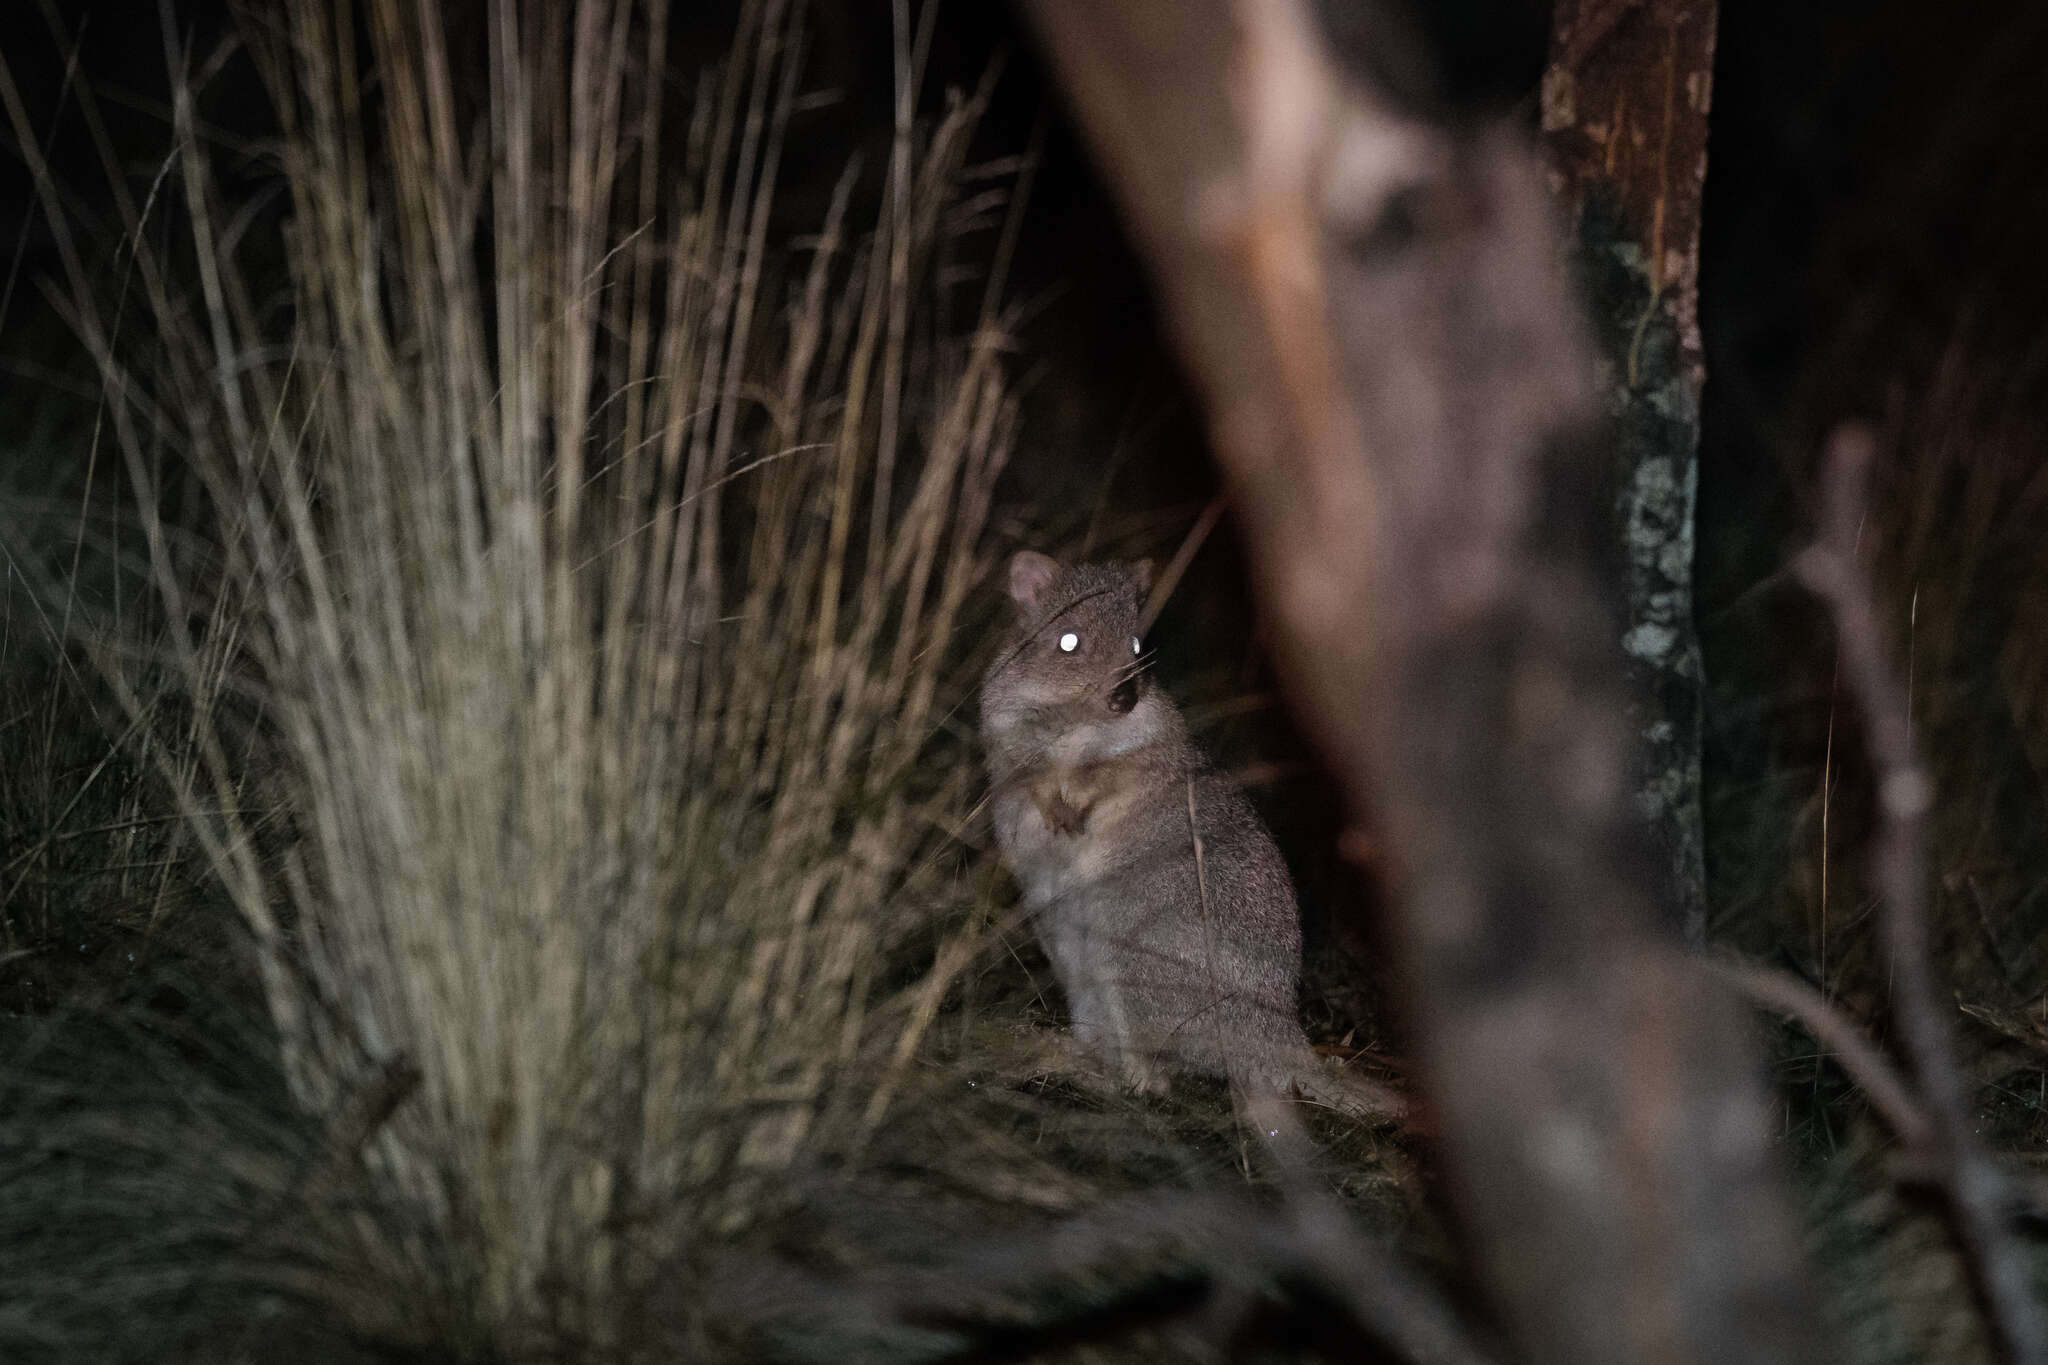 Sivun Tasmaniankaivajakenguru kuva